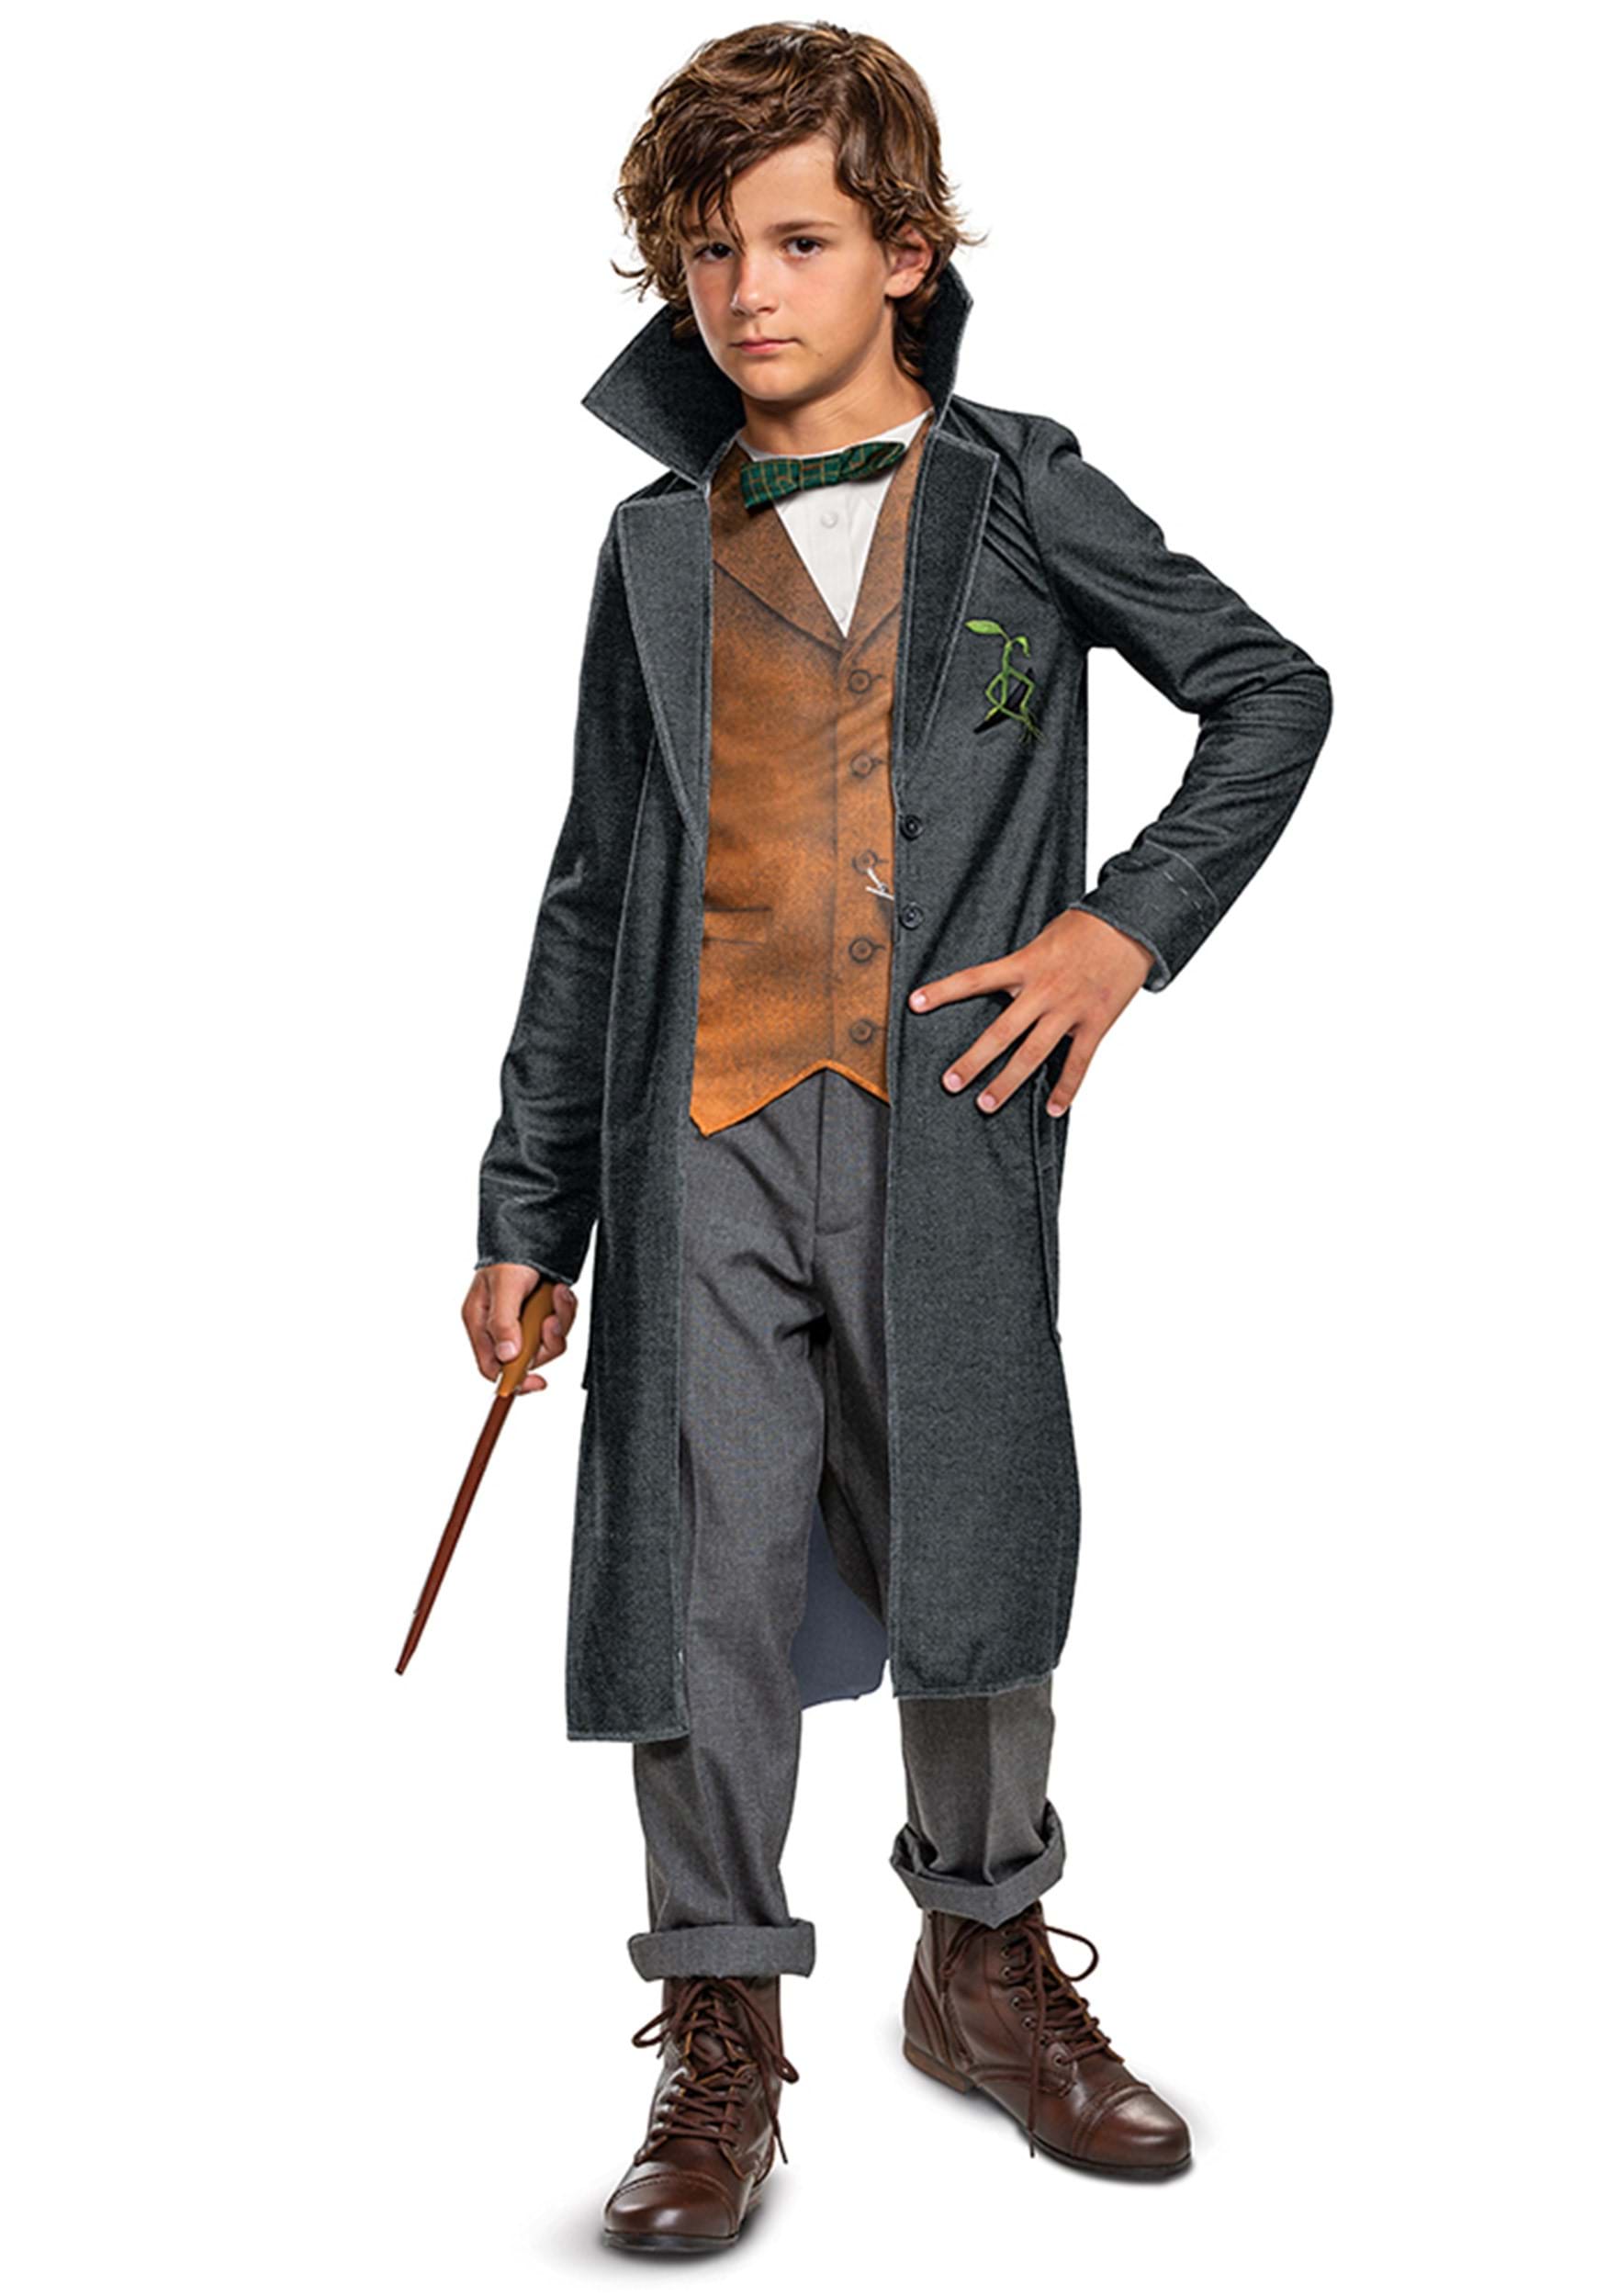 Fantastic Beasts Deluxe Newt Scamander Kid's Costume